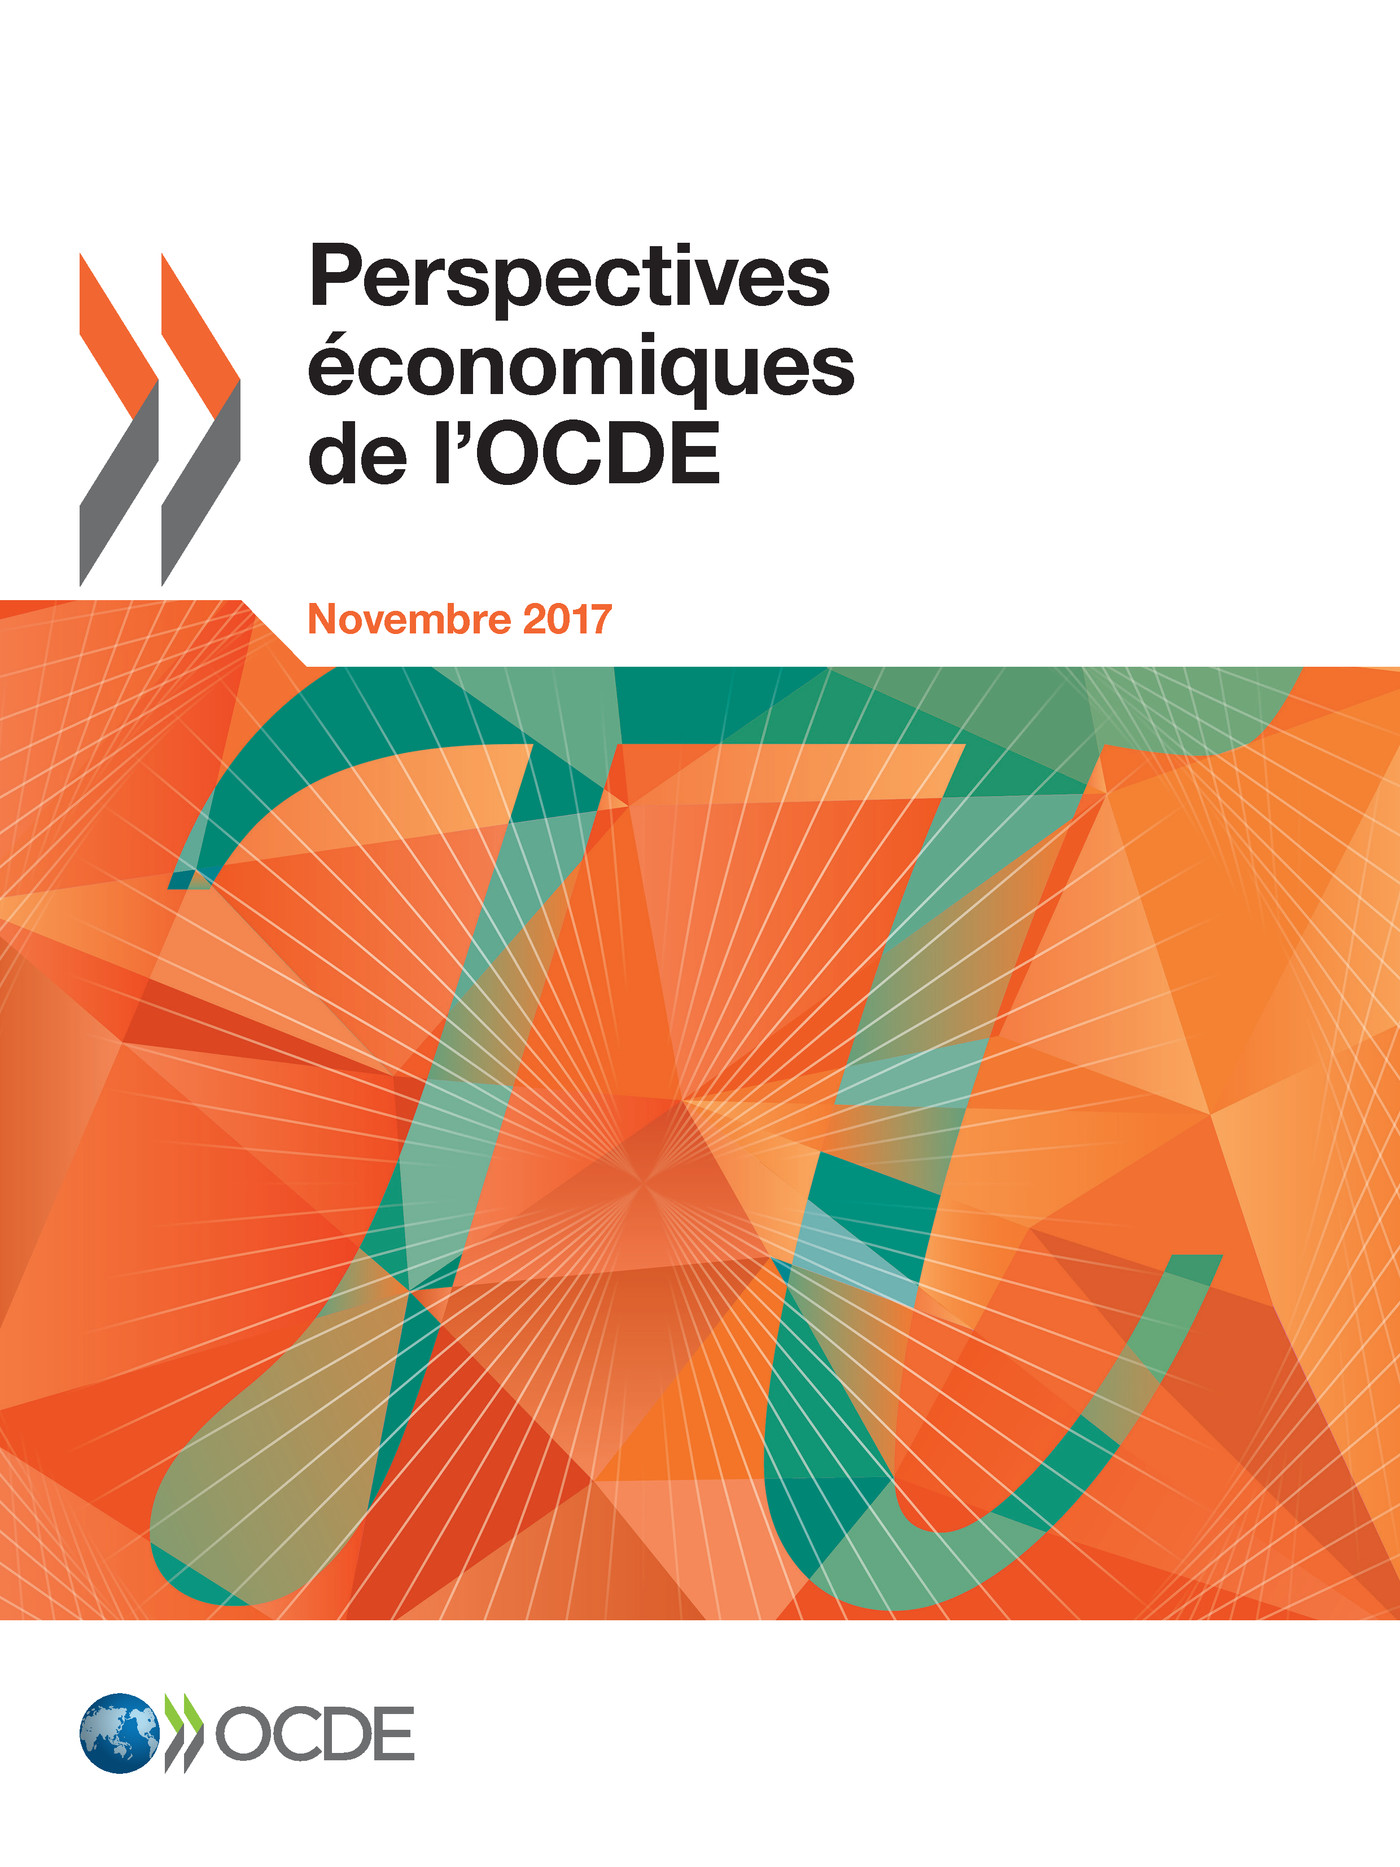 Perspectives économiques de l'OCDE, Volume 2017 Numéro 2 -  Collectif - OCDE / OECD